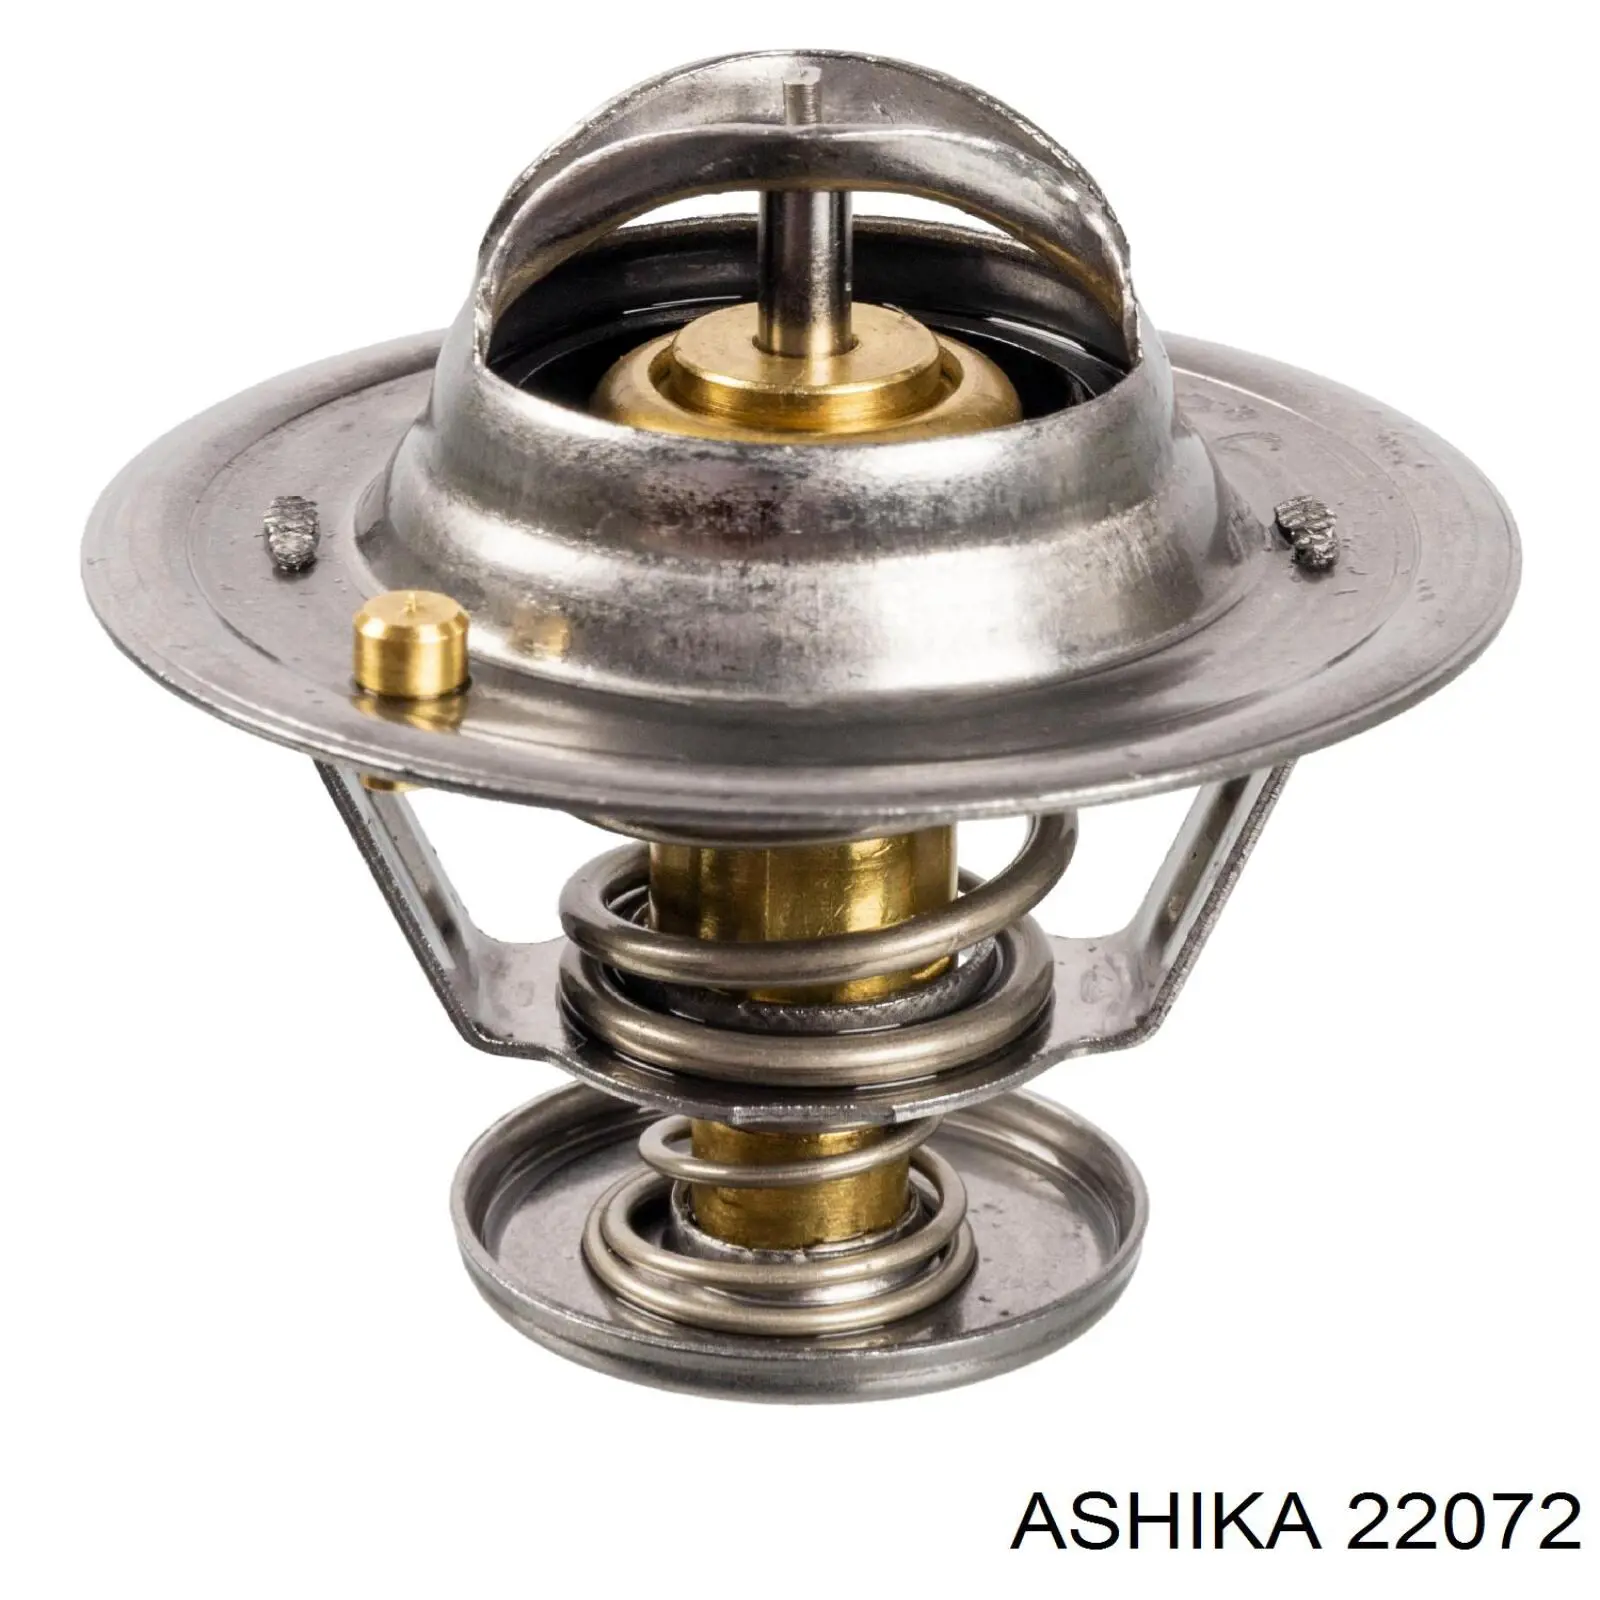 22072 Ashika termostato